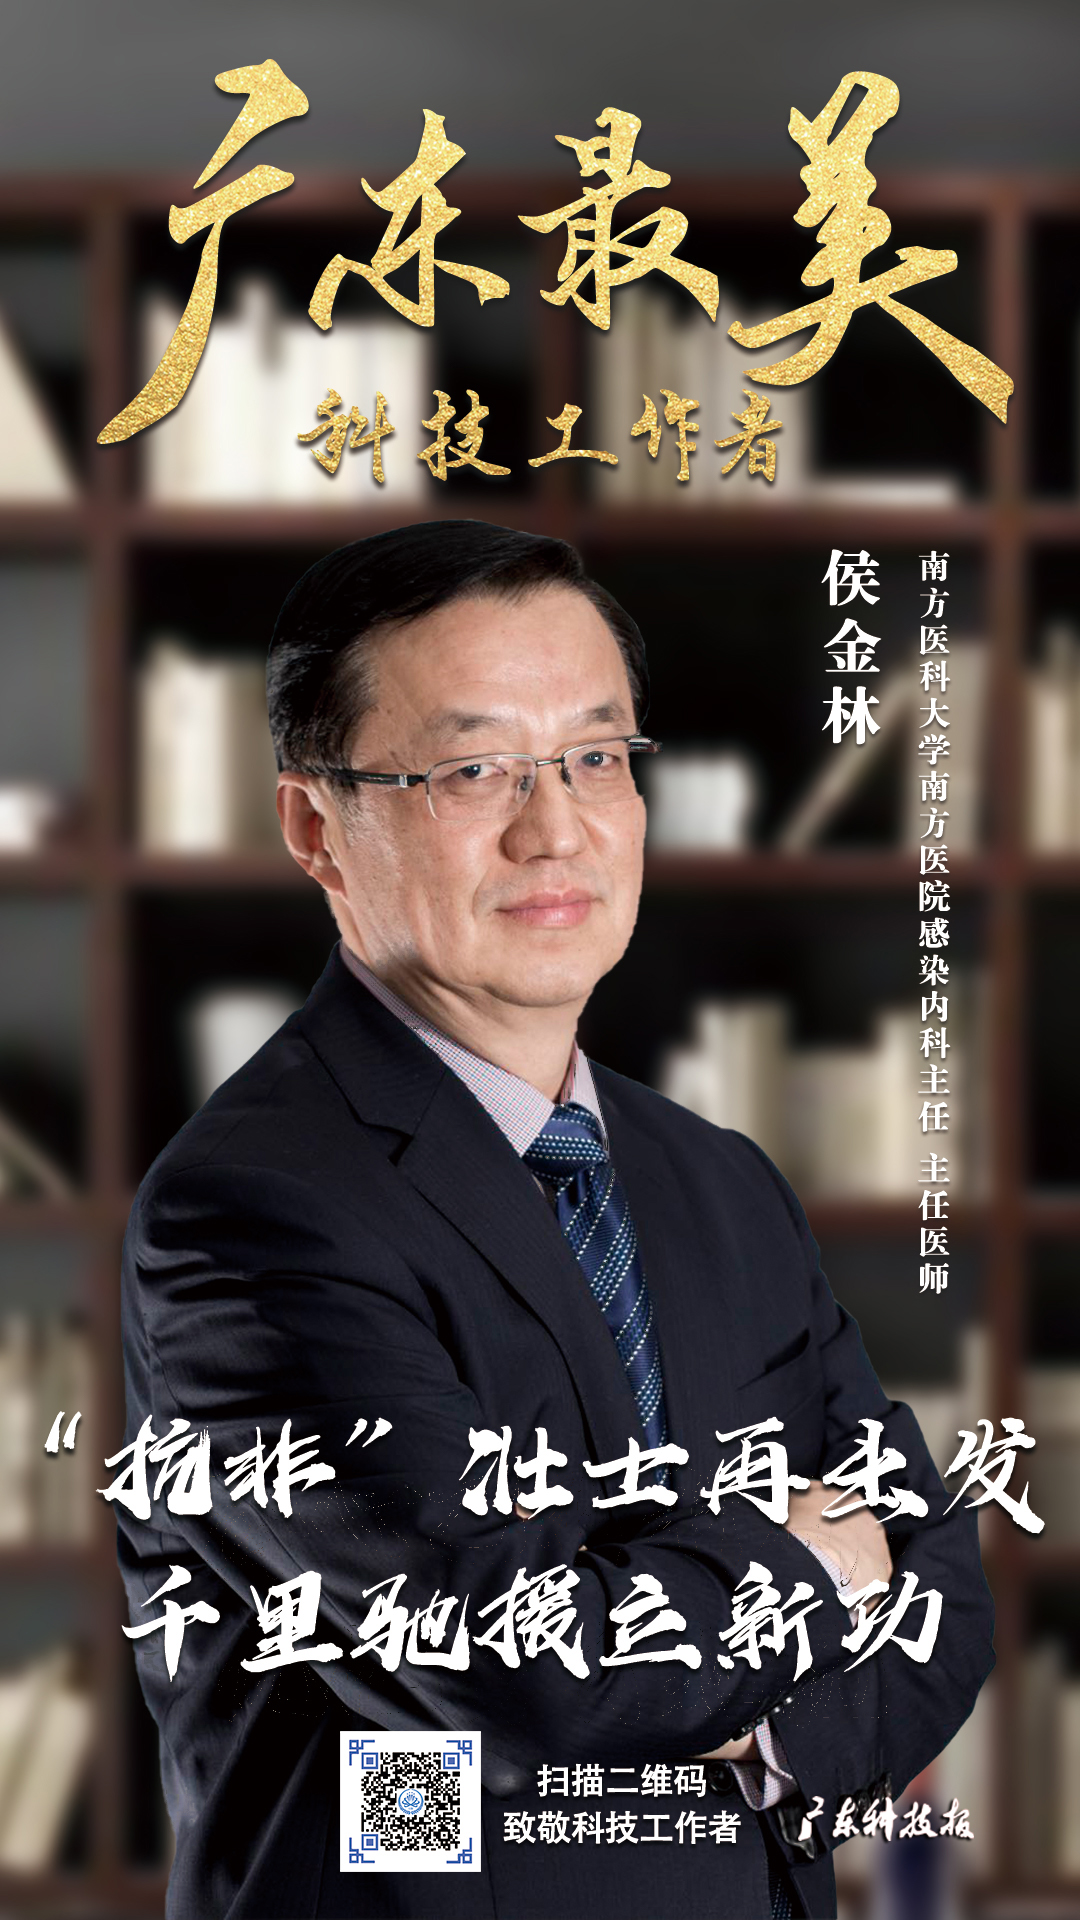 广东表彰十大最美科技工作者学会副会长侯金林理事张忠德双双上榜